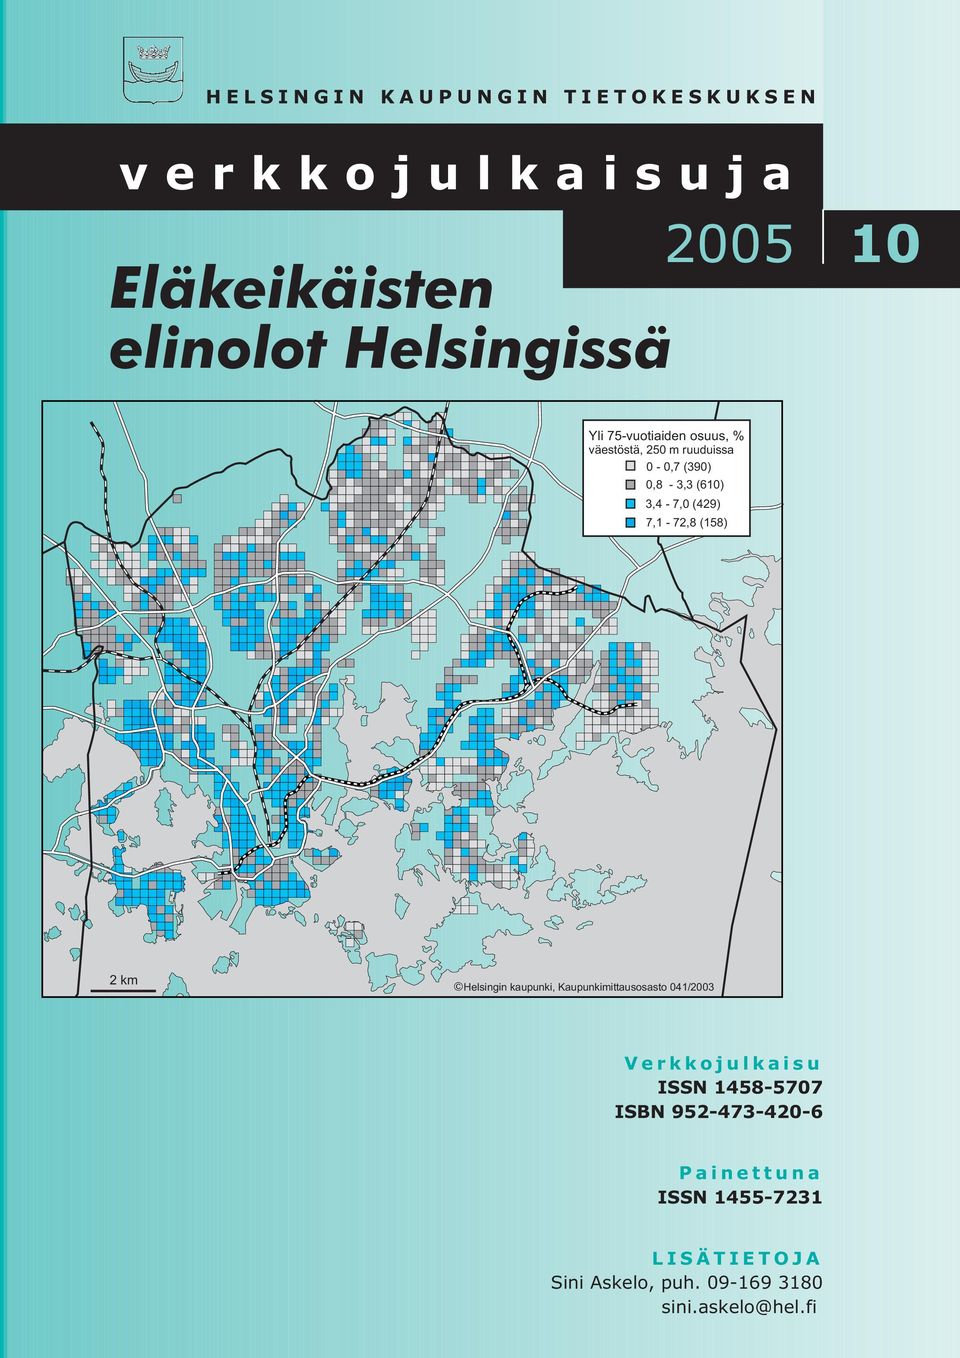 (158) 2km Helsingin kaupunki, Kaupunkimittausosasto 041/2003 Verkkojulkaisu ISSN 1458-5707 ISBN